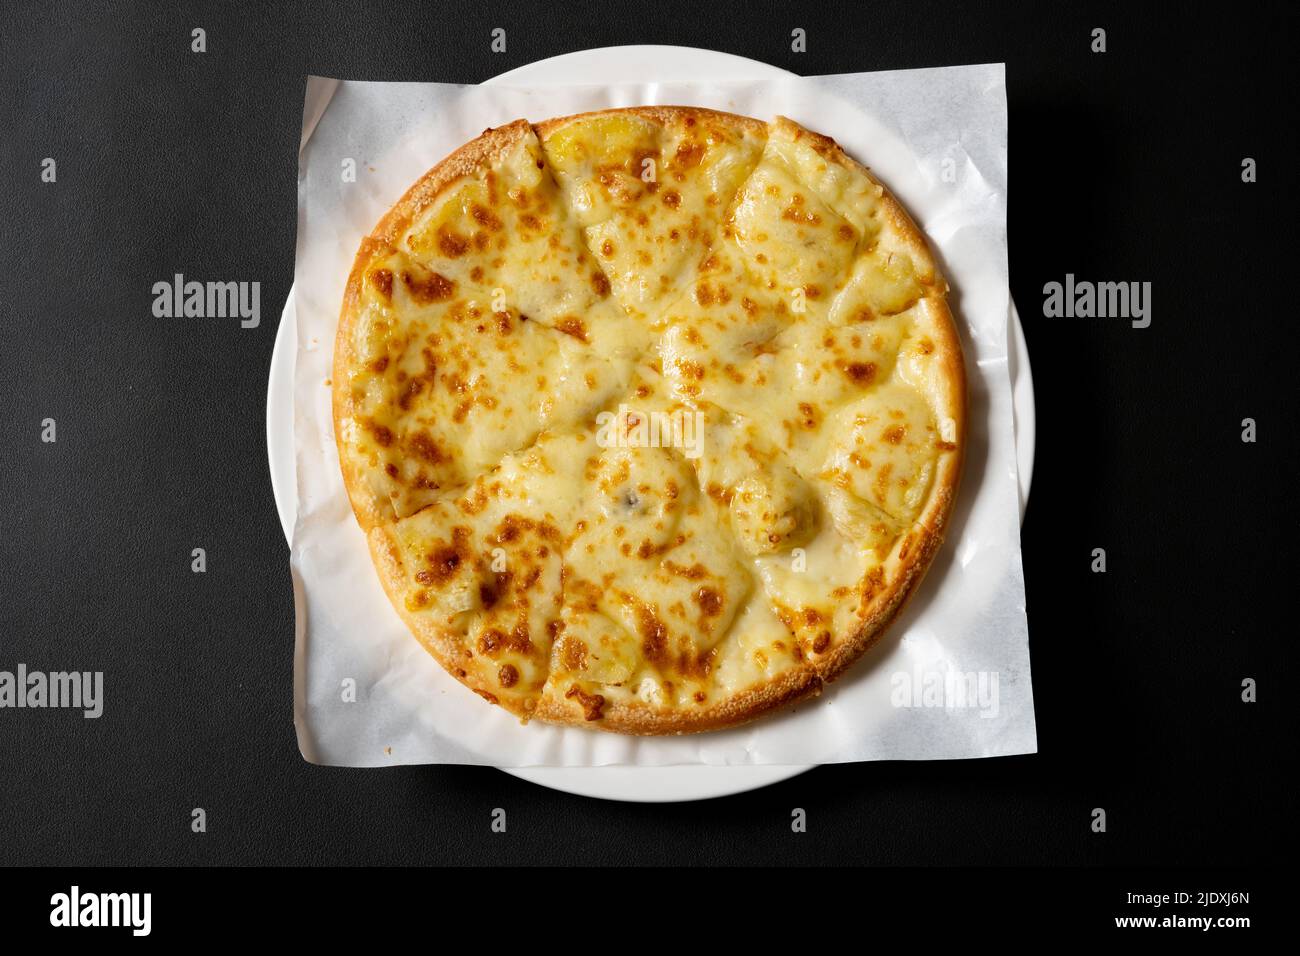 vista de arriba pizza fresca con rodajas de plátano en el interior Foto de stock